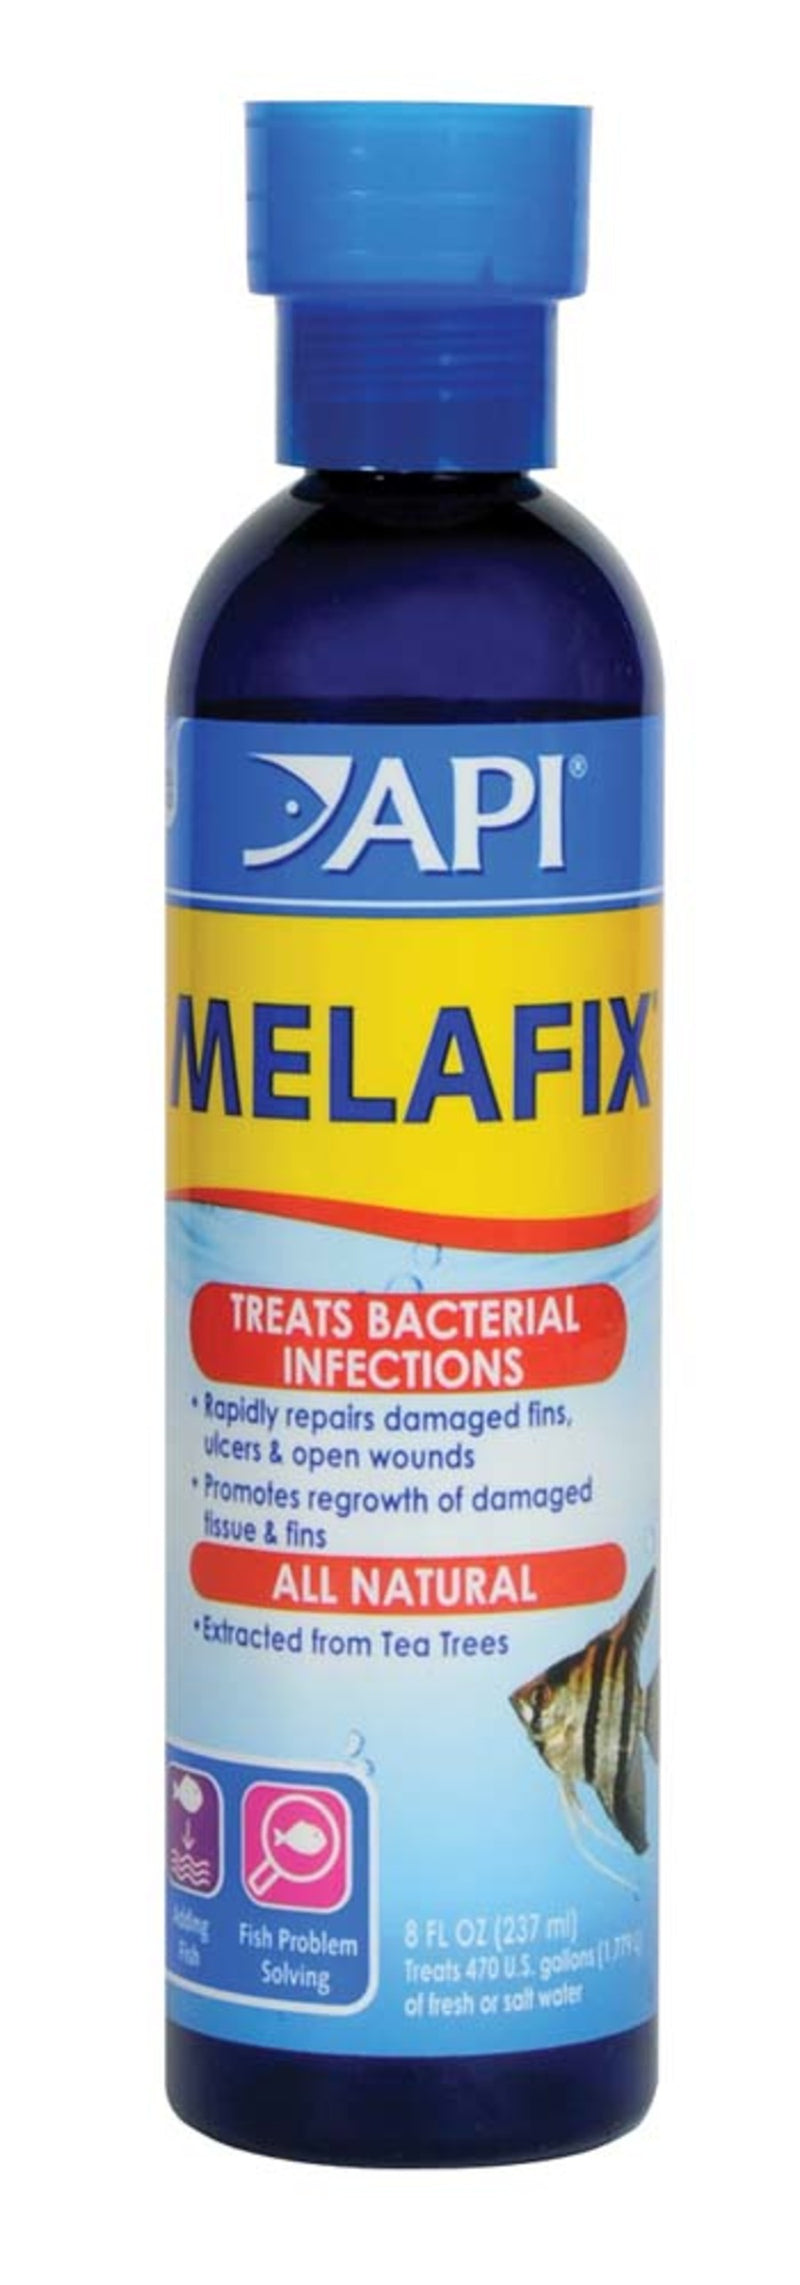 API Melafix Baterial Infection Remedy - 8oz